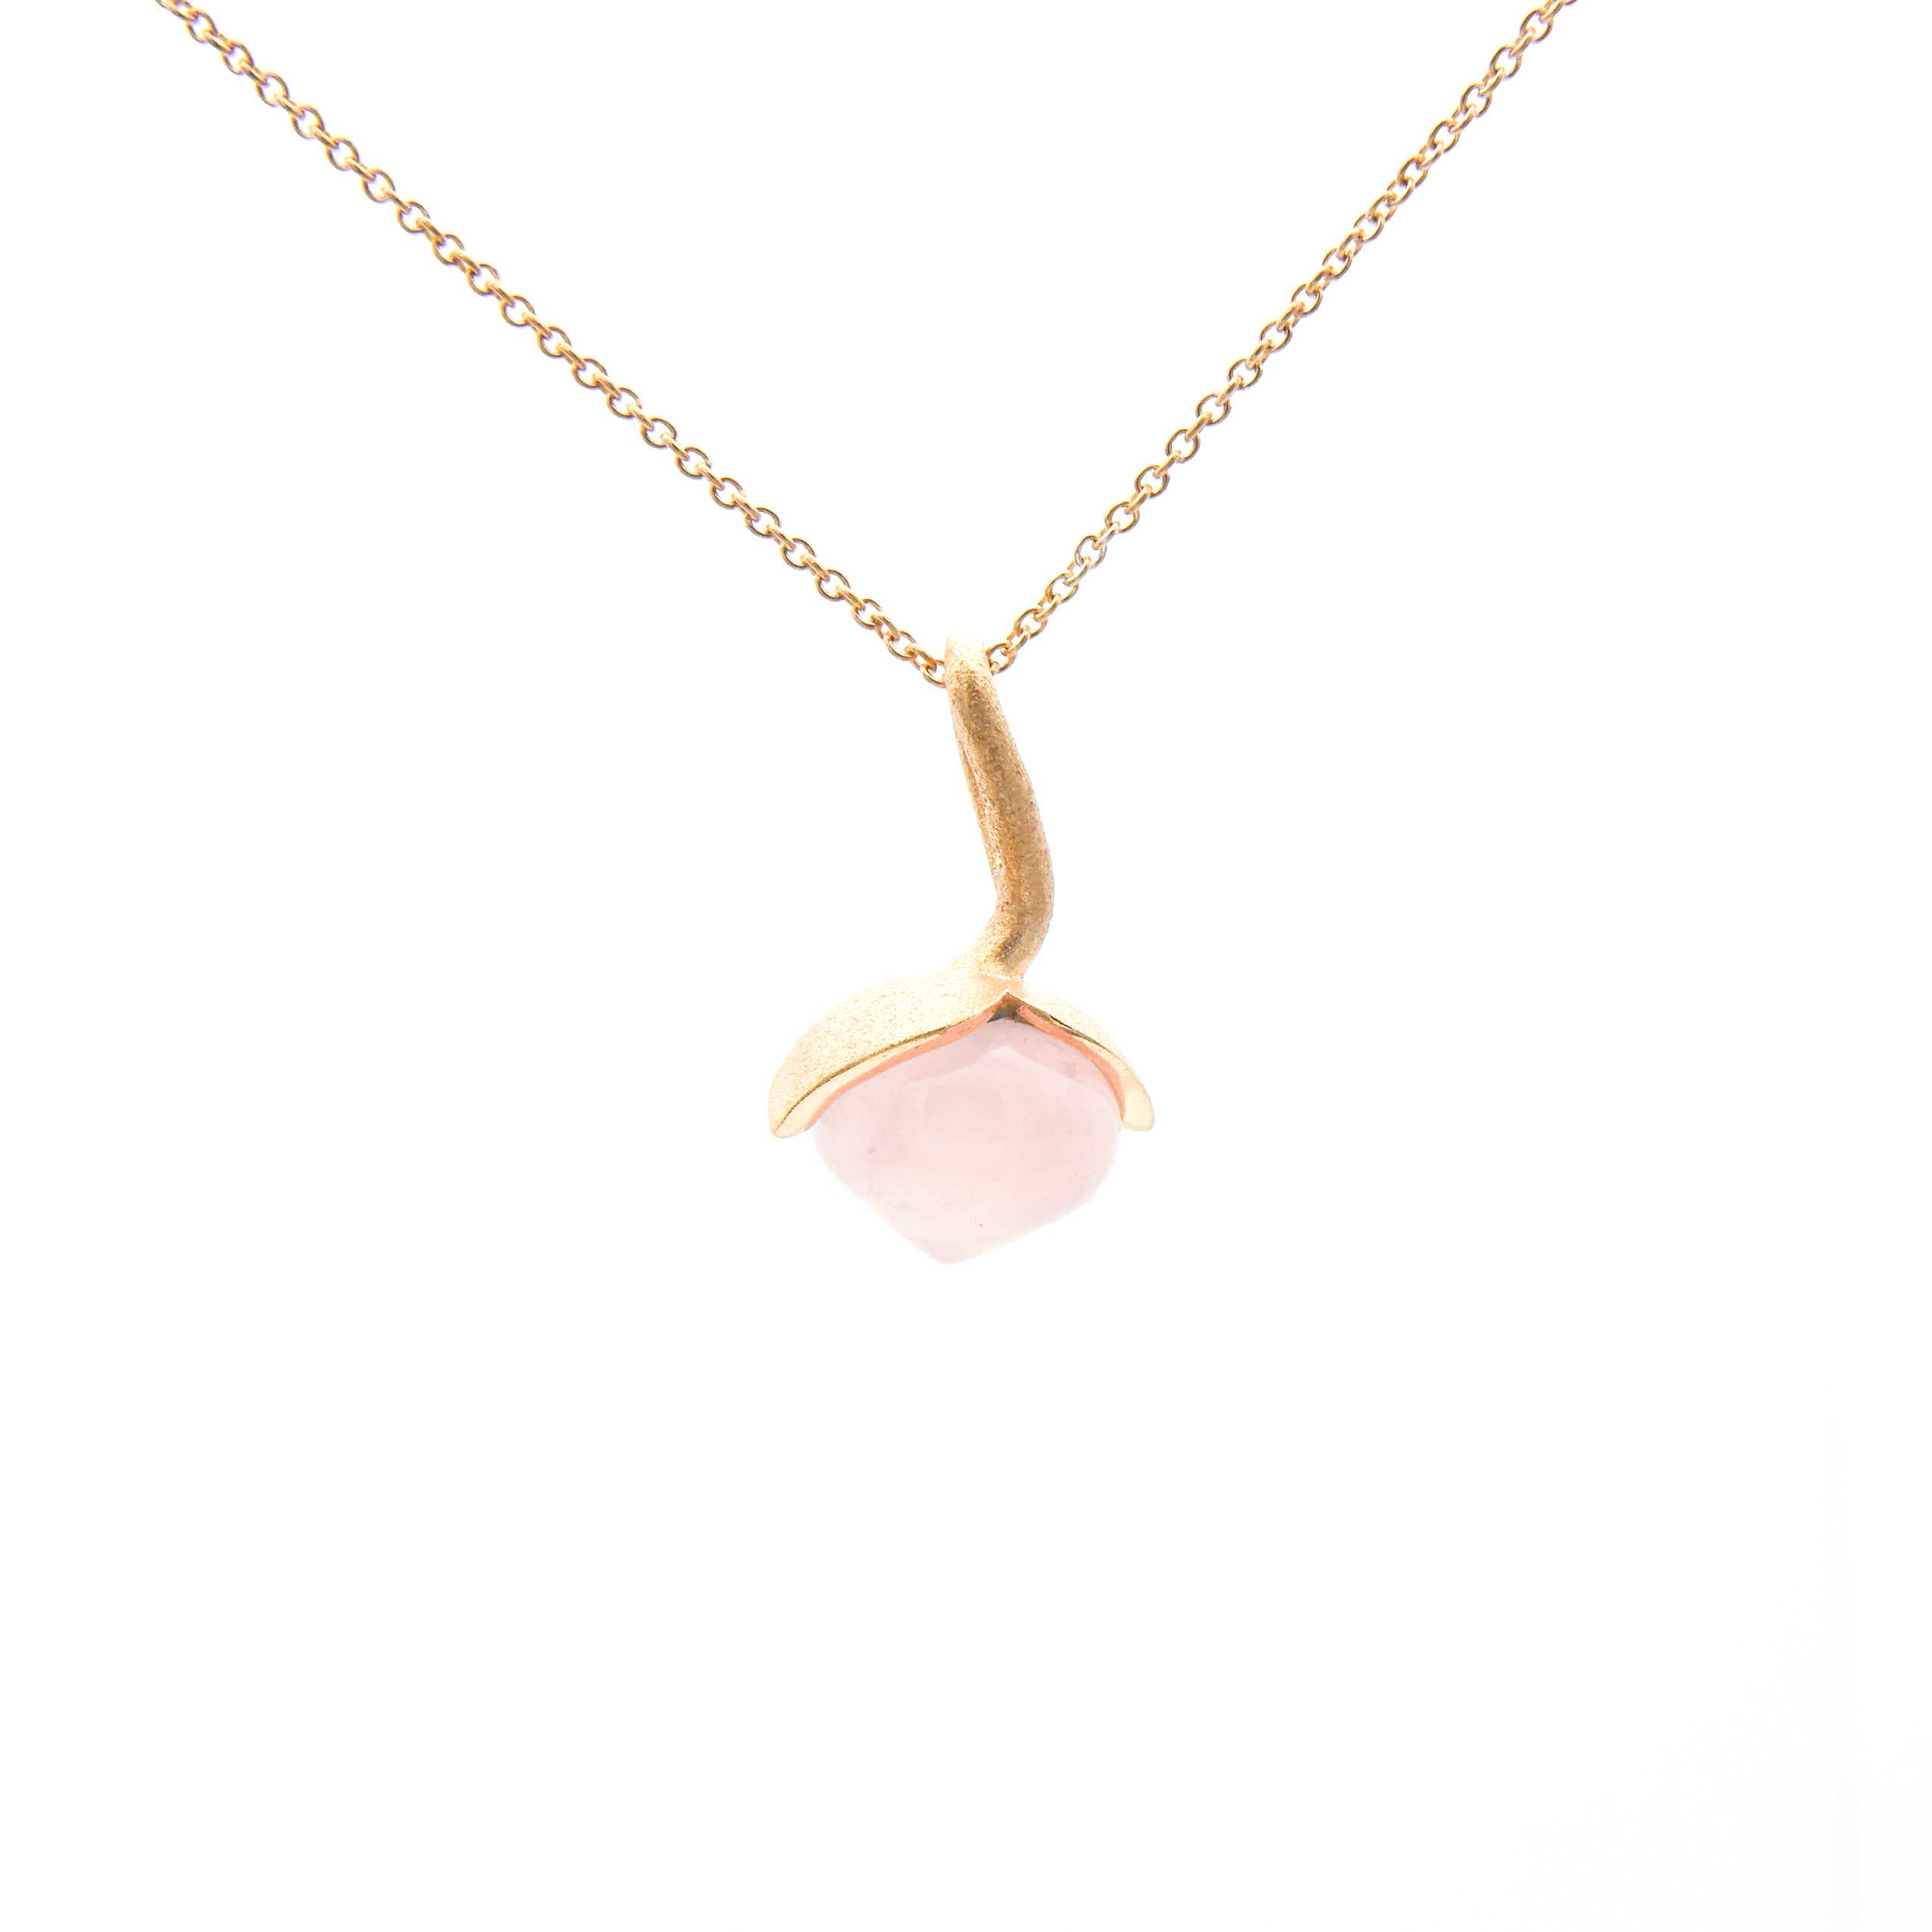 Dolce pendant "medium" with rose quartz 925/-